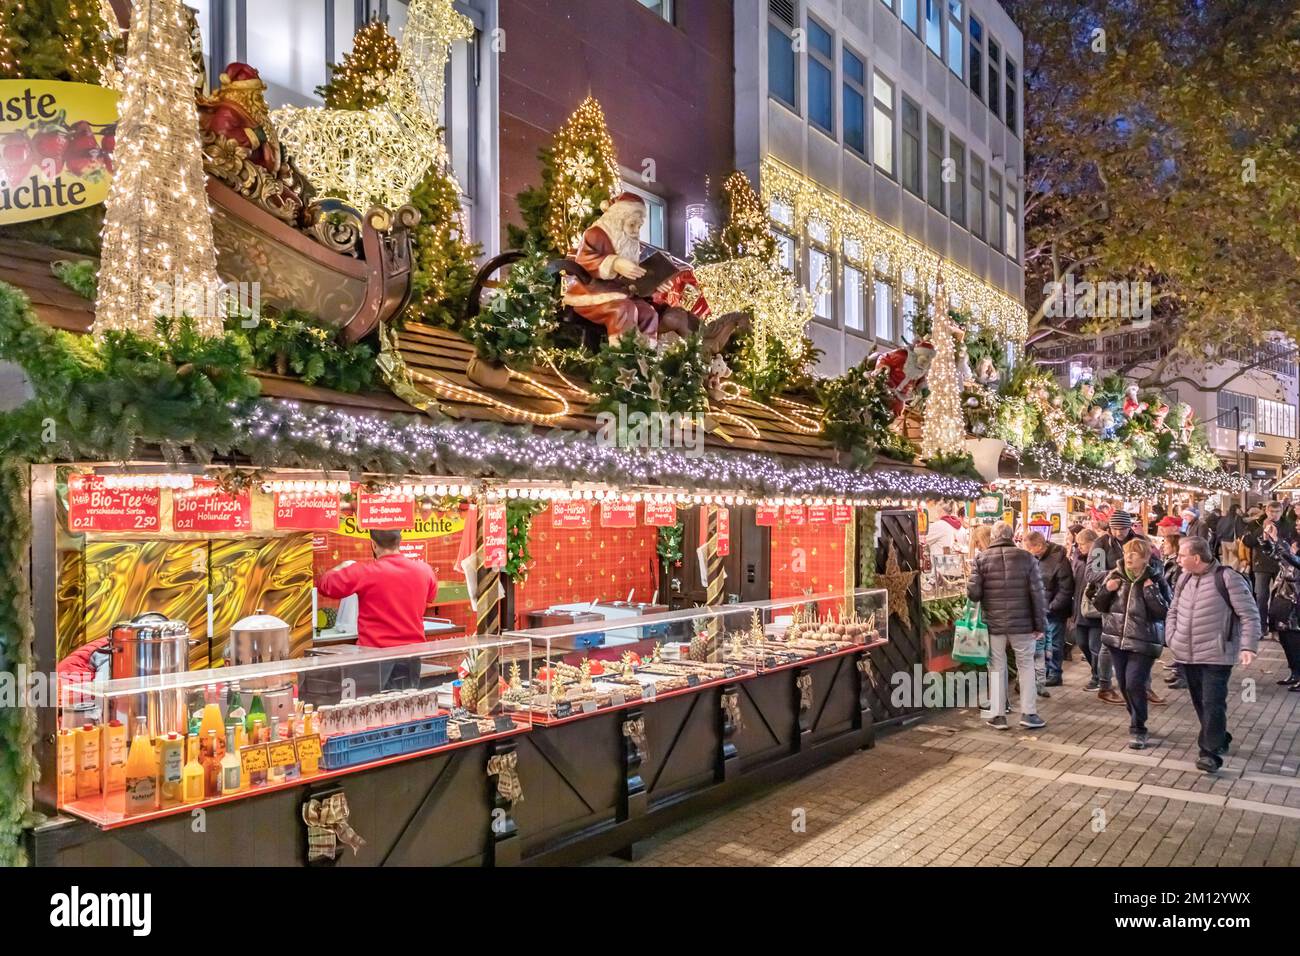 Mercatino di Natale di Stoccarda, stand e passanti a Kirchstraße Foto Stock